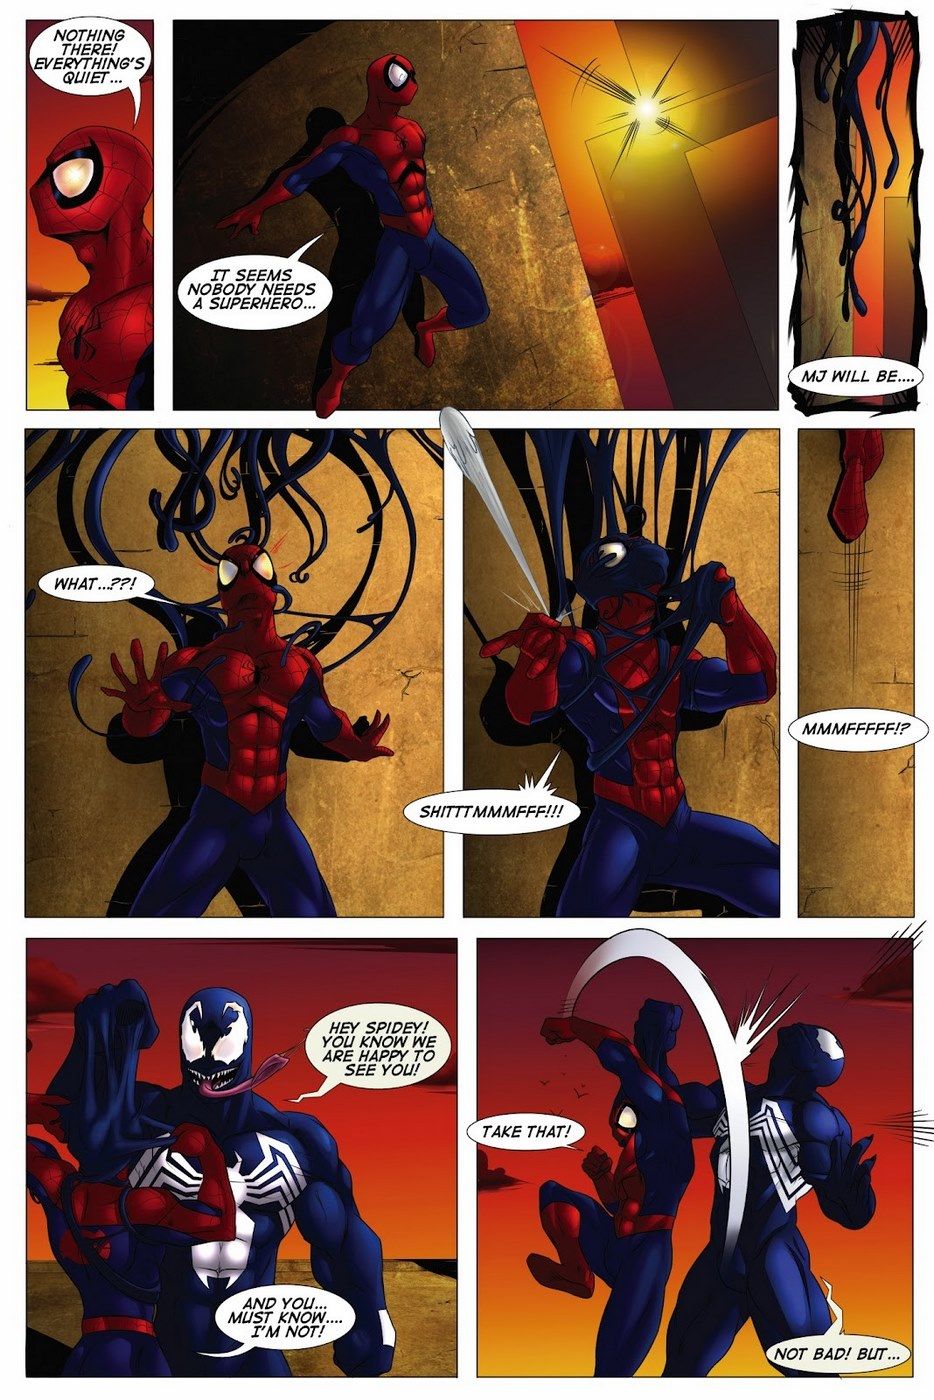 Shooters (Spider-Man Venom) page 2